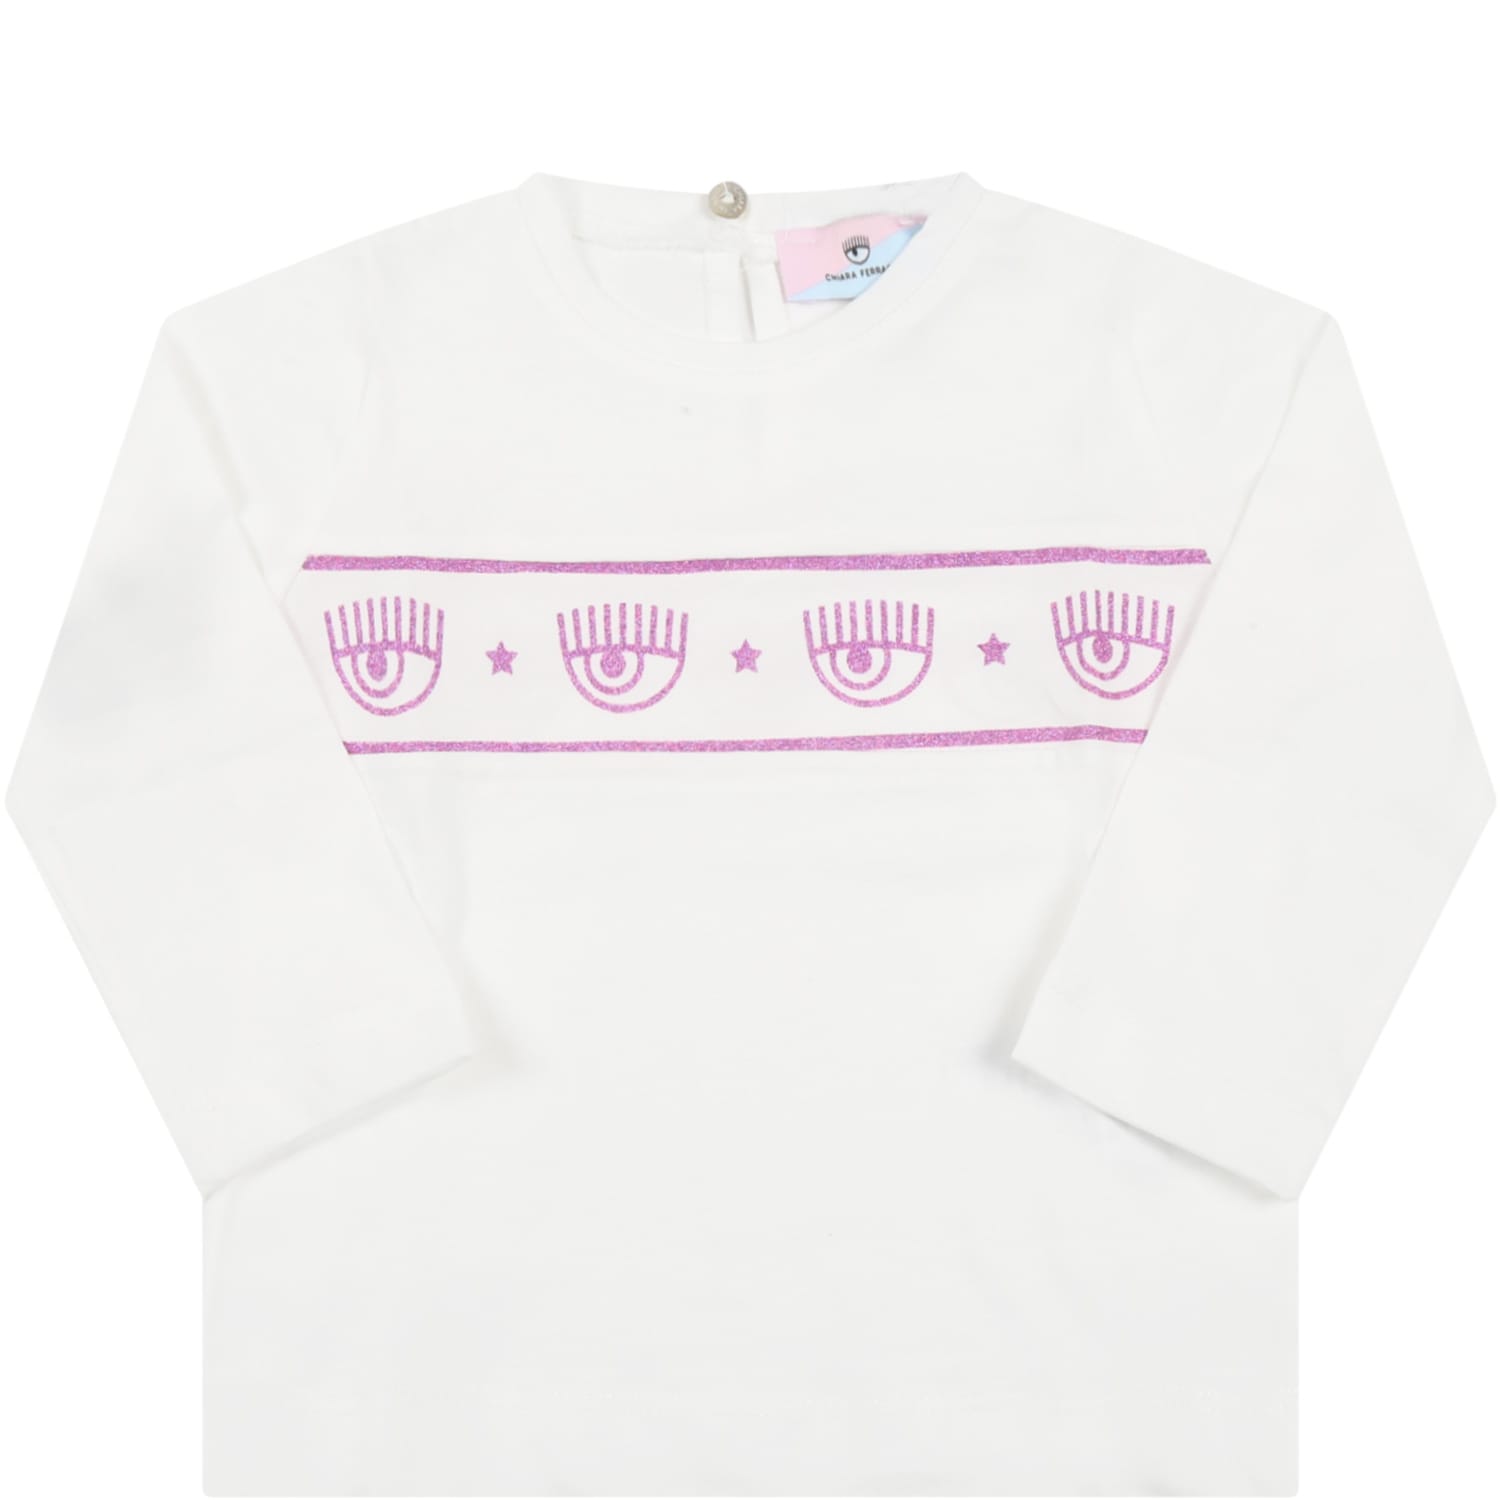 Chiara Ferragni White T-shirt For Baby Girl With Blinking Eye